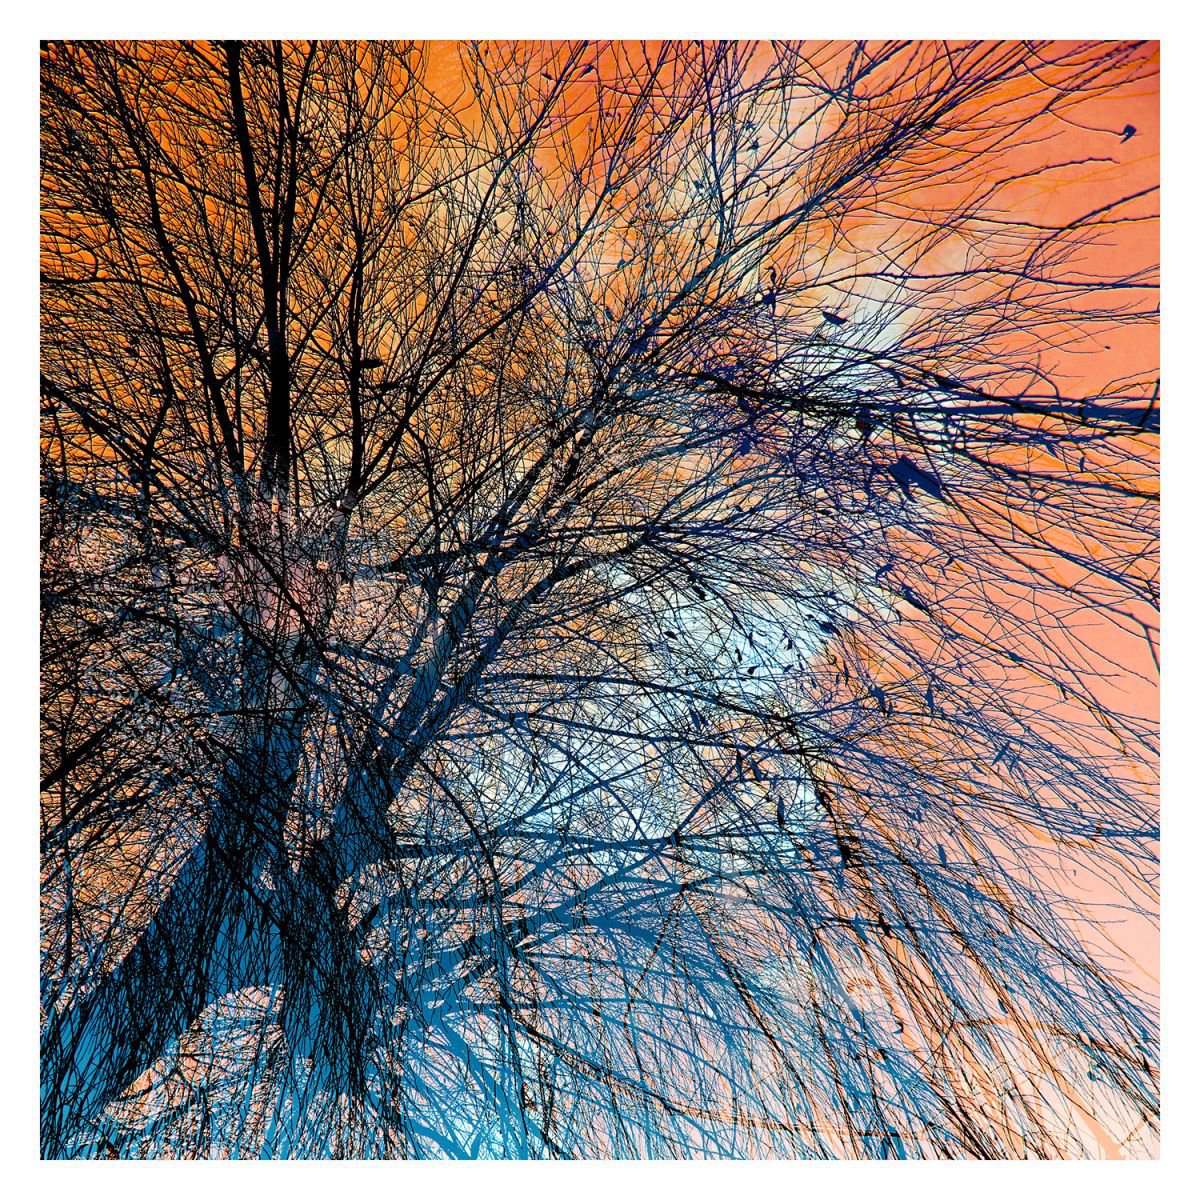 Orange Willow Sky by Chris Keegan